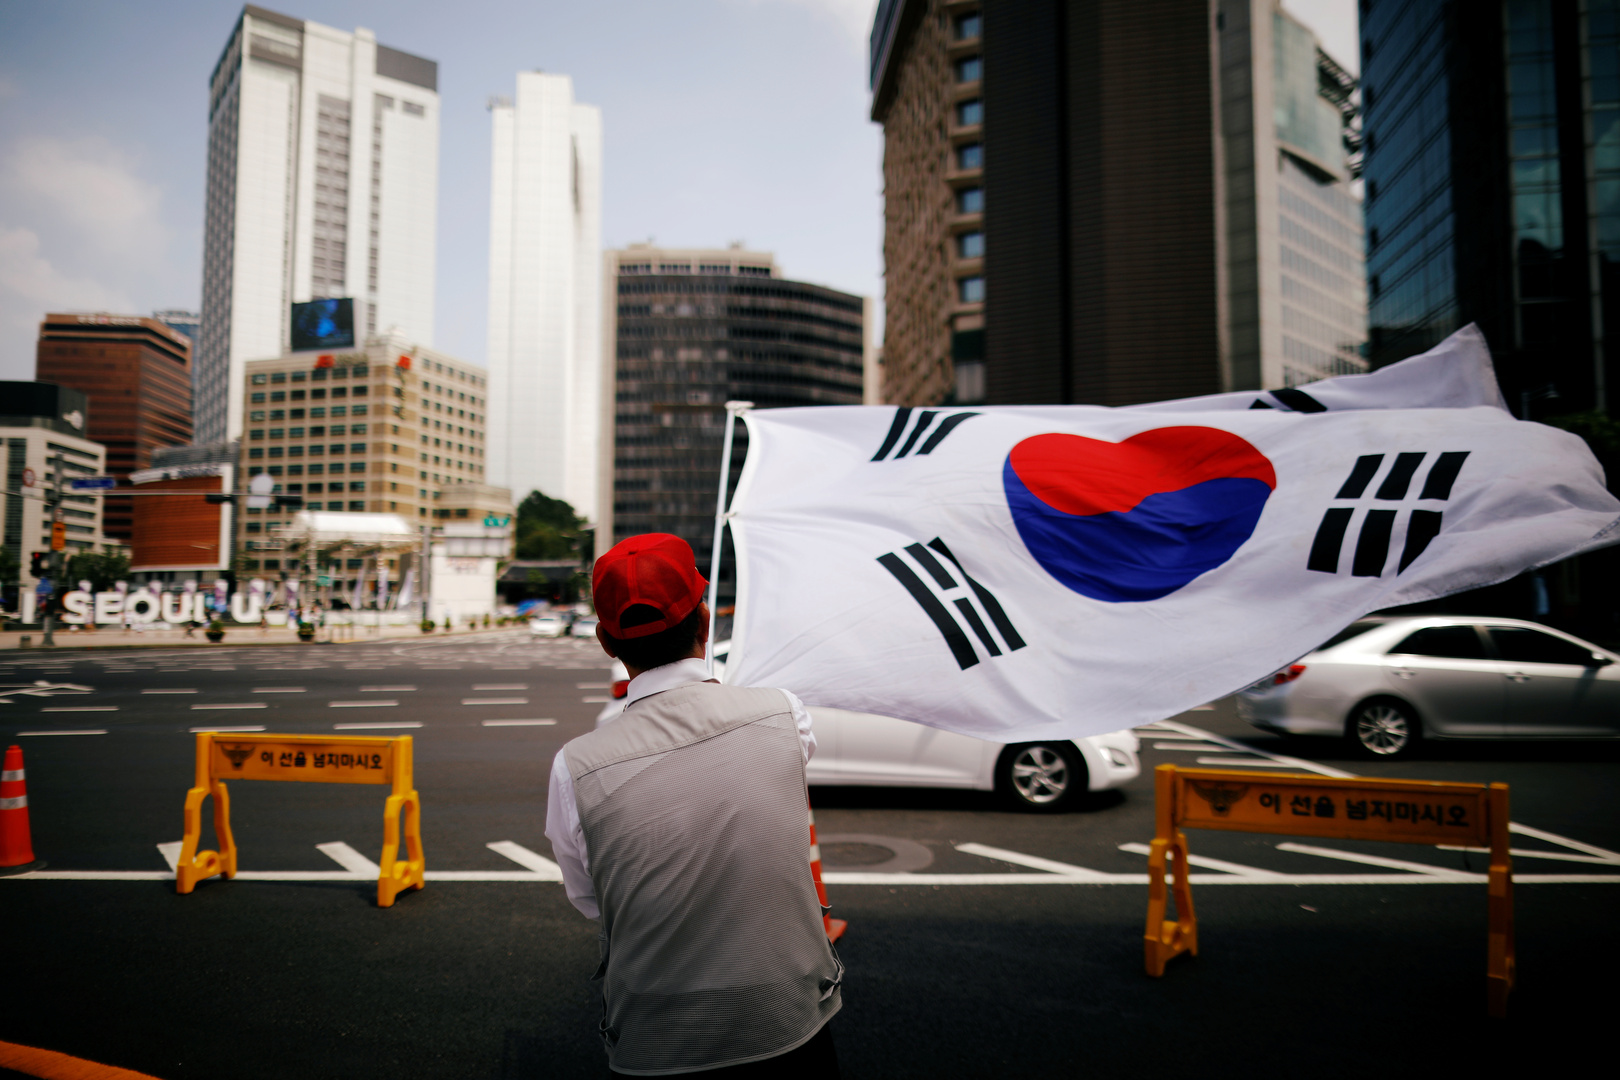 كوريا الجنوبية تهدف إلى تطعيم 70% من السكان بلقاح كورونا بحلول سبتمبر